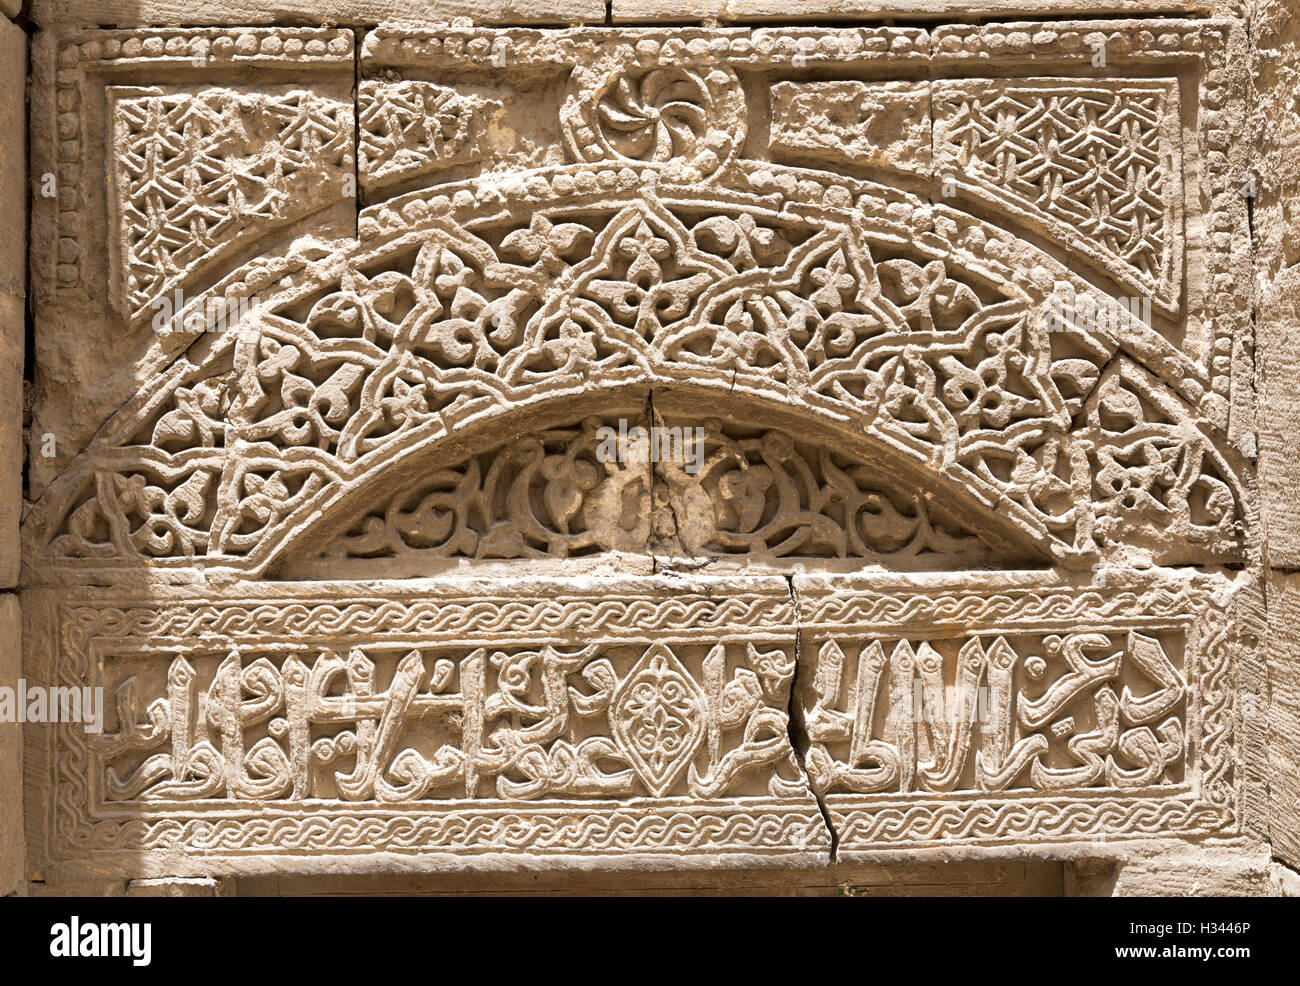 Décoration en pierre sculptée, d'Enclos funéraires de Shaikh Zayn al-Din Yusuf, Le Caire, Egypte Banque D'Images